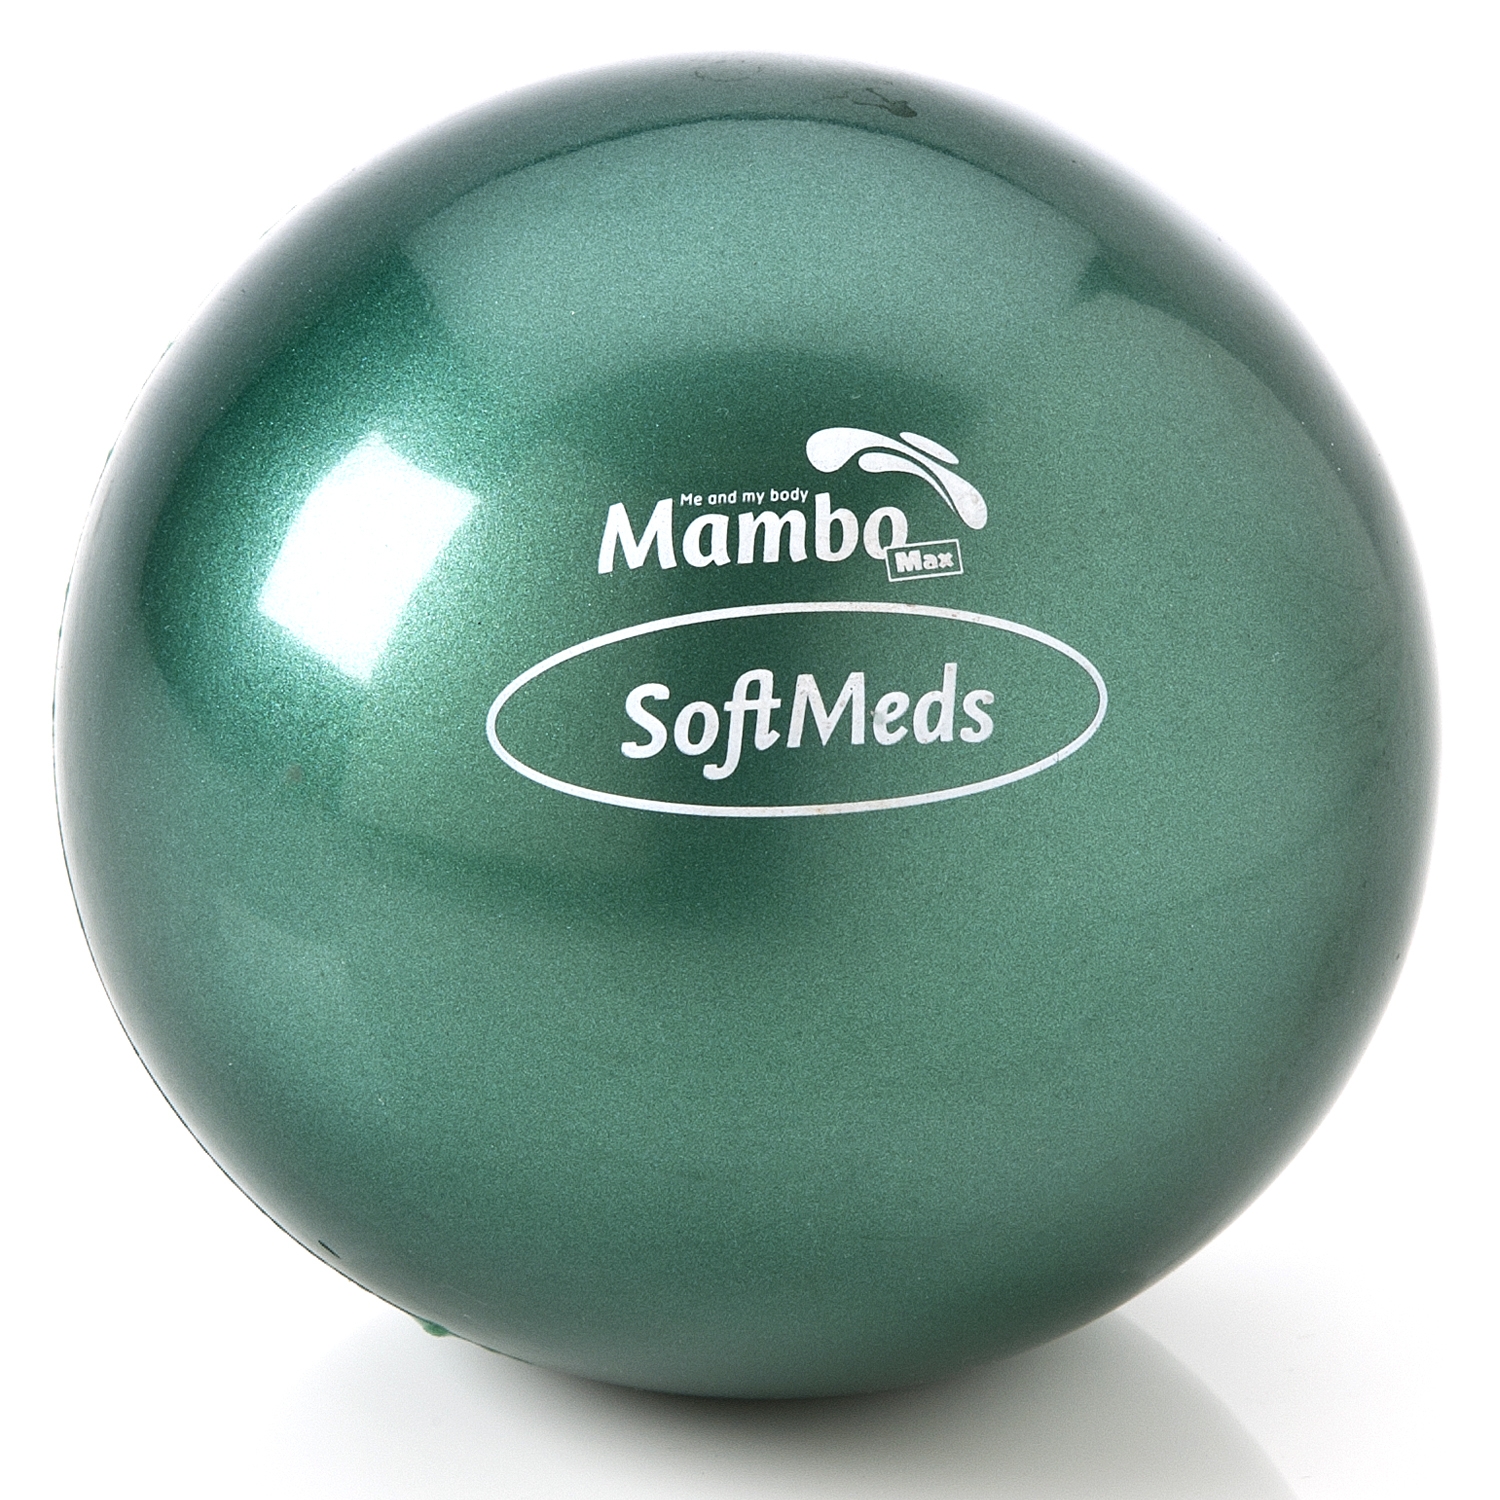 Softmed balle de poids - Mambo - 2,0 kg - vert